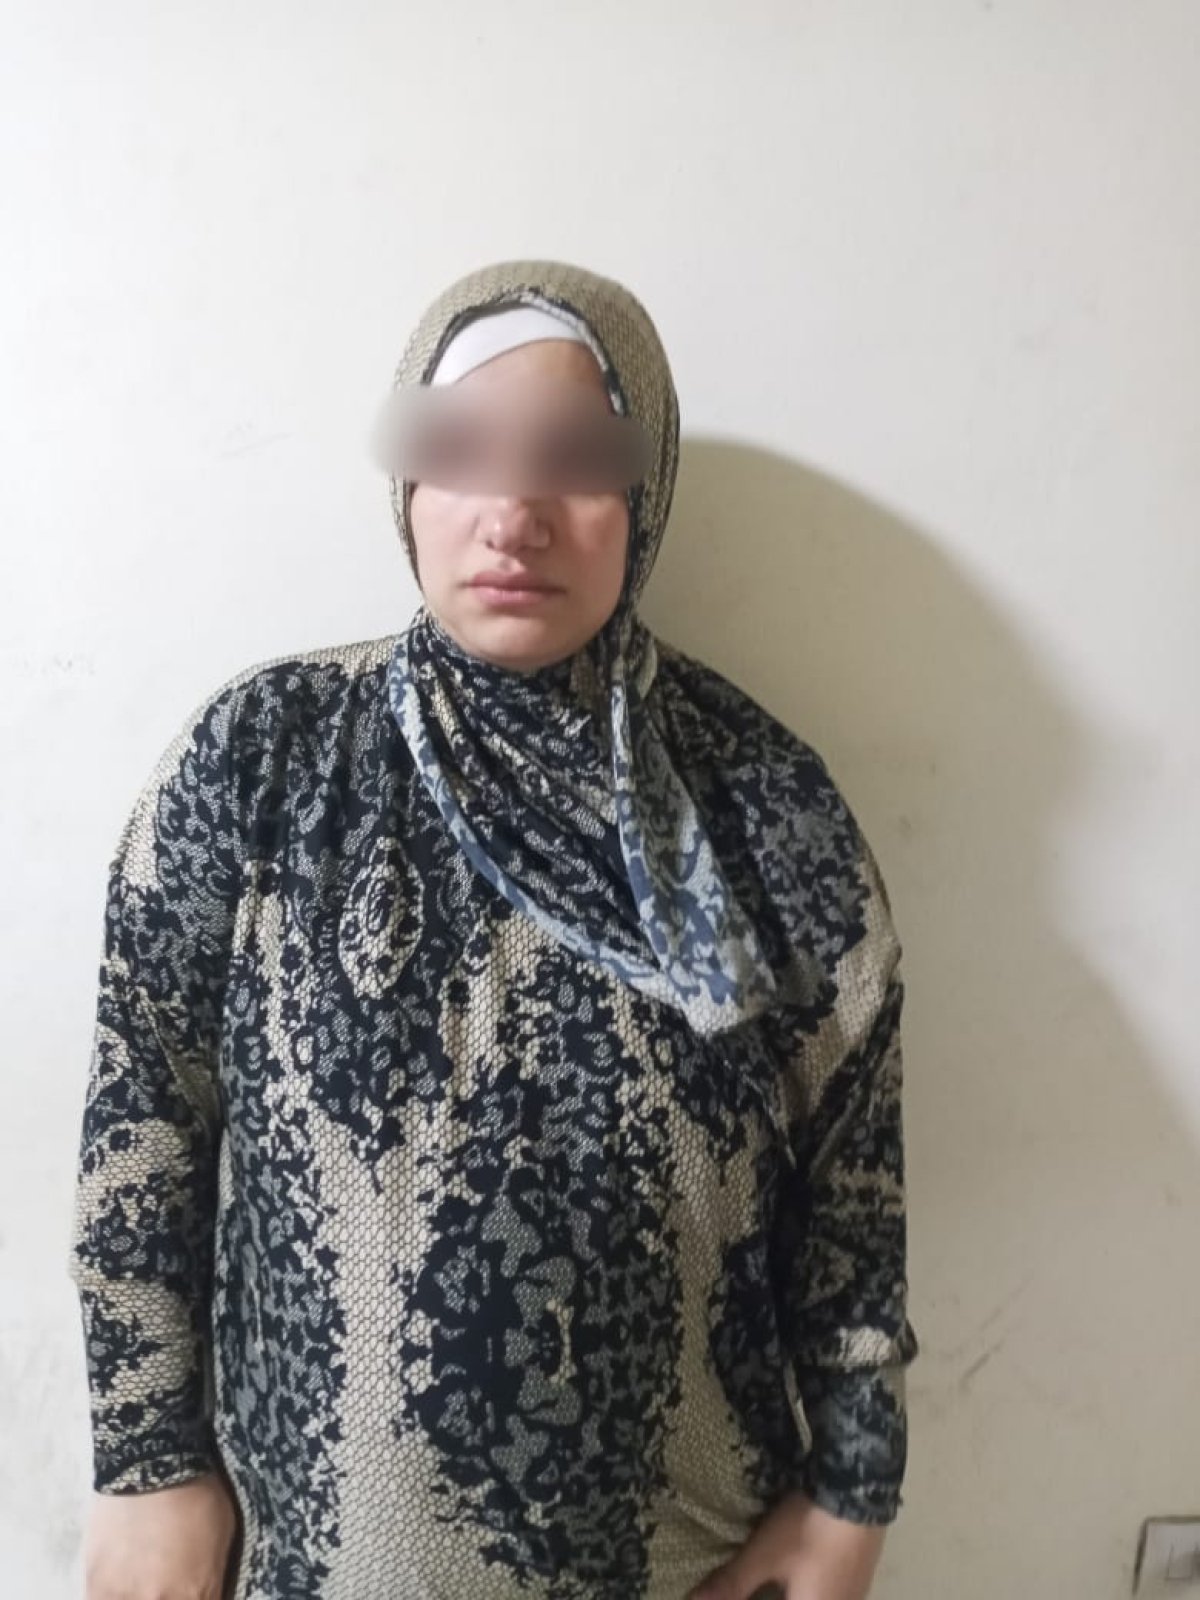 حبس البلوجر "أم زياد" بعد فيديو اكتشاف علاقة جنسية بين أطفالها